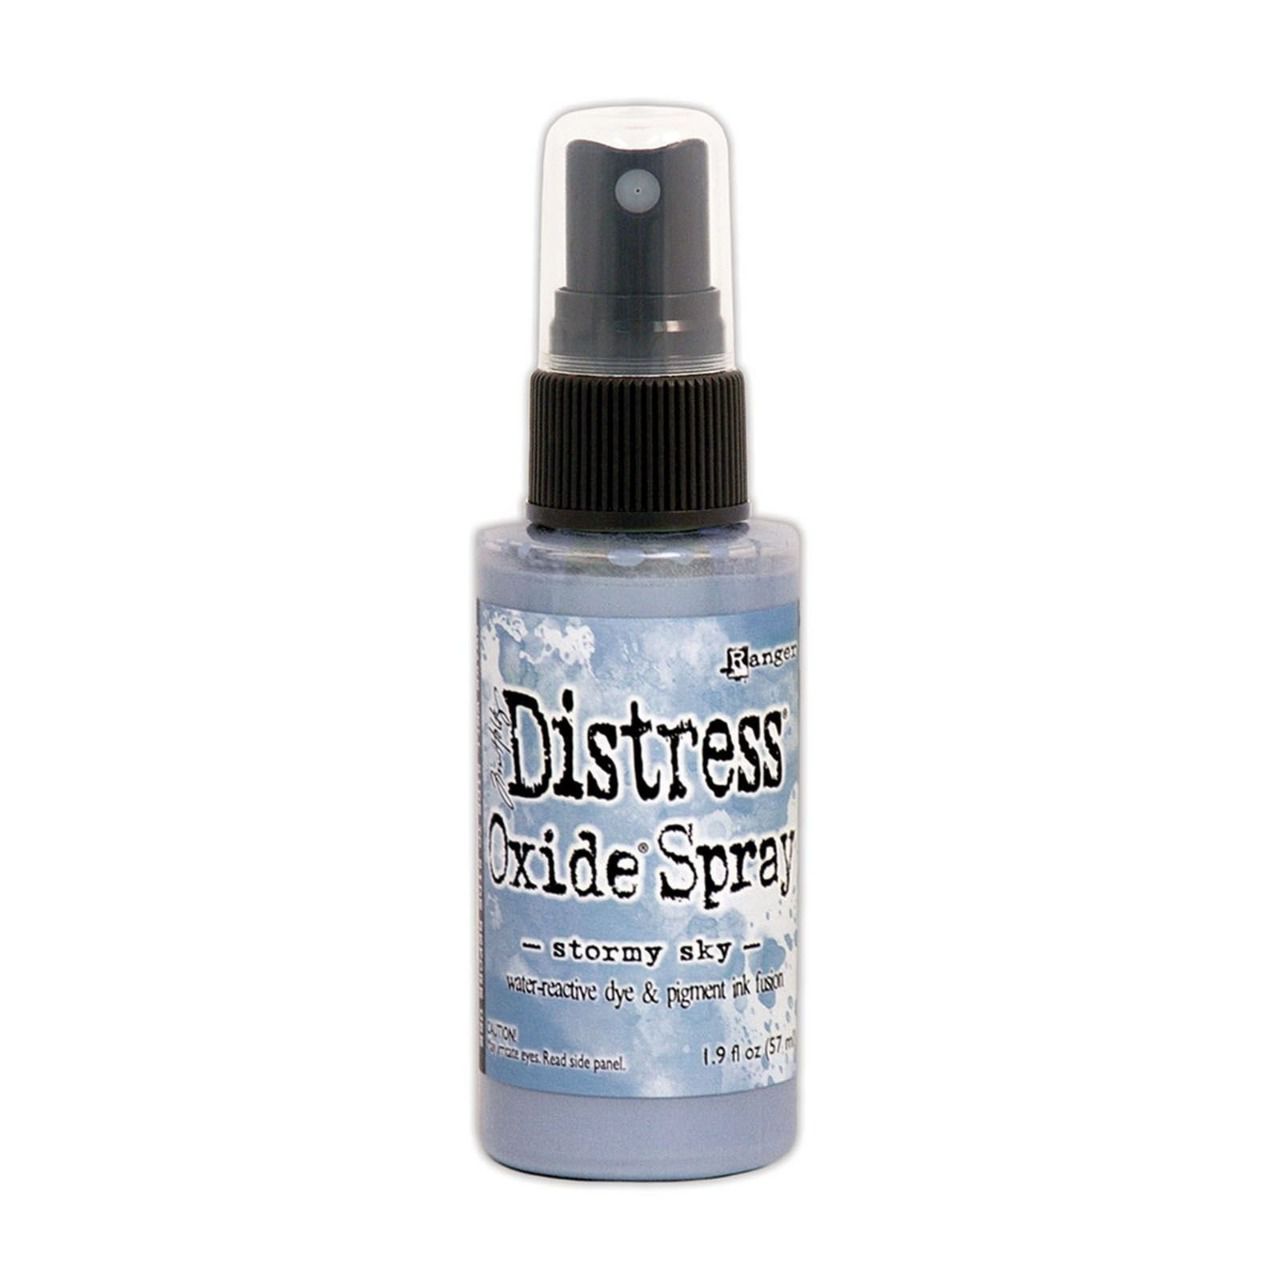 Distress spray oxide : Stormy sky